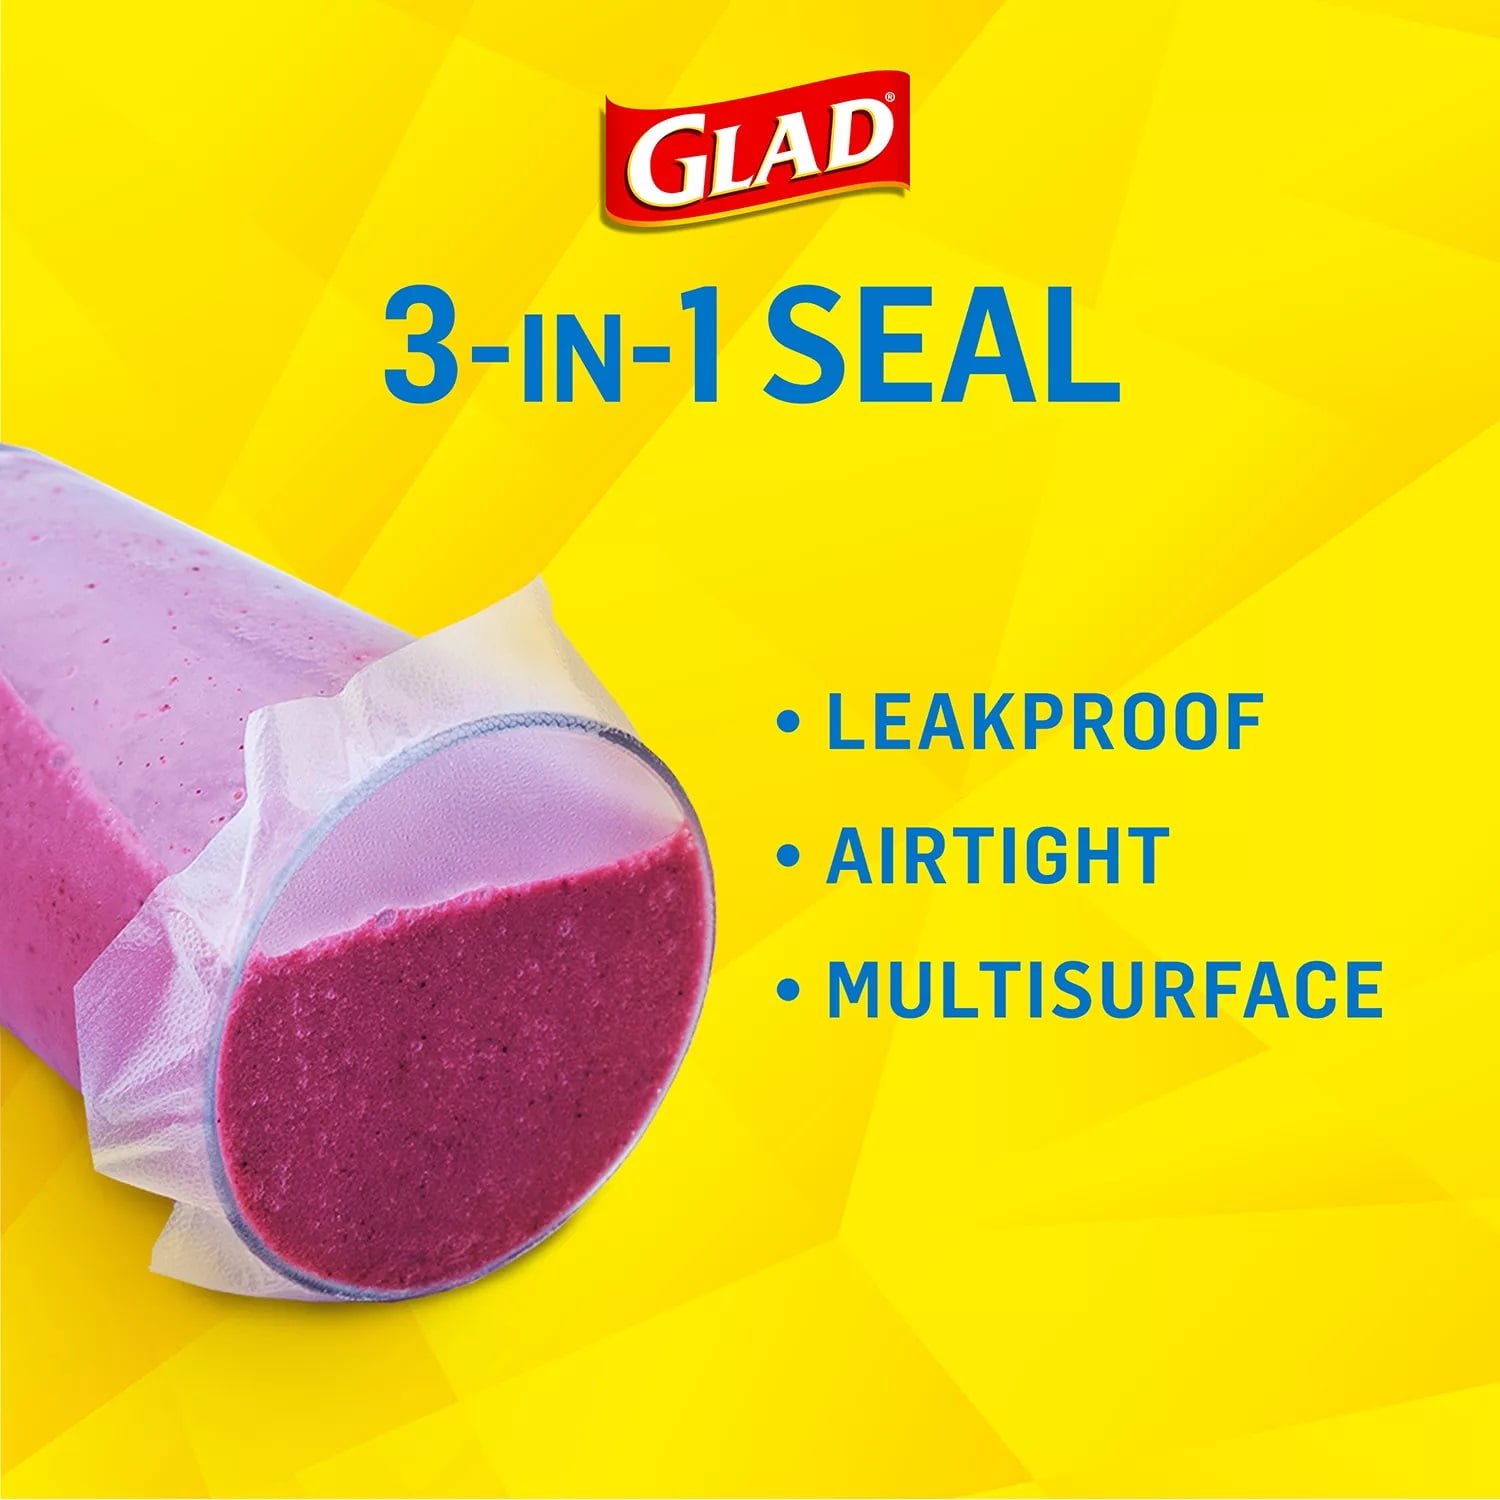 Glad Press'n Seal Food Wrap, 140 sq ft-2 Pack, 1 - Harris Teeter